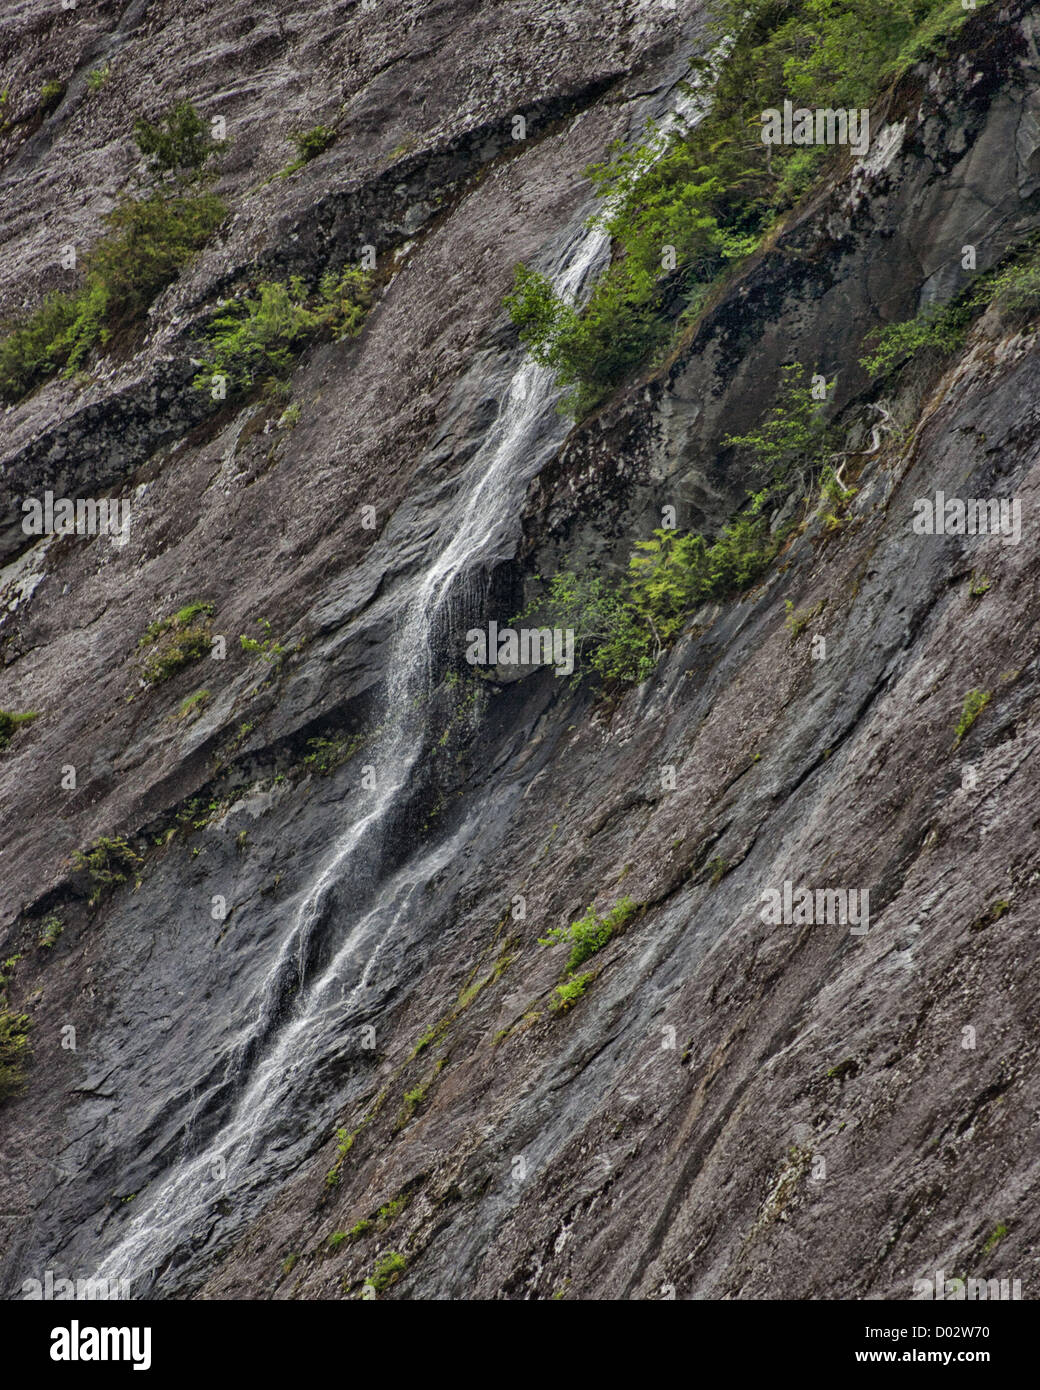 6 luglio 2012 - Gateway Ketchikan Borough, Alaska, USA - drammatico corso cascate giù le imponenti pareti di granito in Misty Fjords Rudyerd Bay. Scolpito da una massiccia azione ghiacciaio 50 a 70 milioni di anni fa, essi si ergono alte come 3.000 ft (900m) e sono contro bilanciato da evergreen foreste pluviali. Misty Fjords National Monument e area selvaggia, lungo il passaggio interno della costa sud-est di Alaska, è gestito dal governo degli STATI UNITI Forest Service e copre 2,294,343Â acri (9,246Â km) di Tongass National Forest, il più grande deserto in Alaskan foreste nazionali ed è accessibile solo da idrovolanti Foto Stock